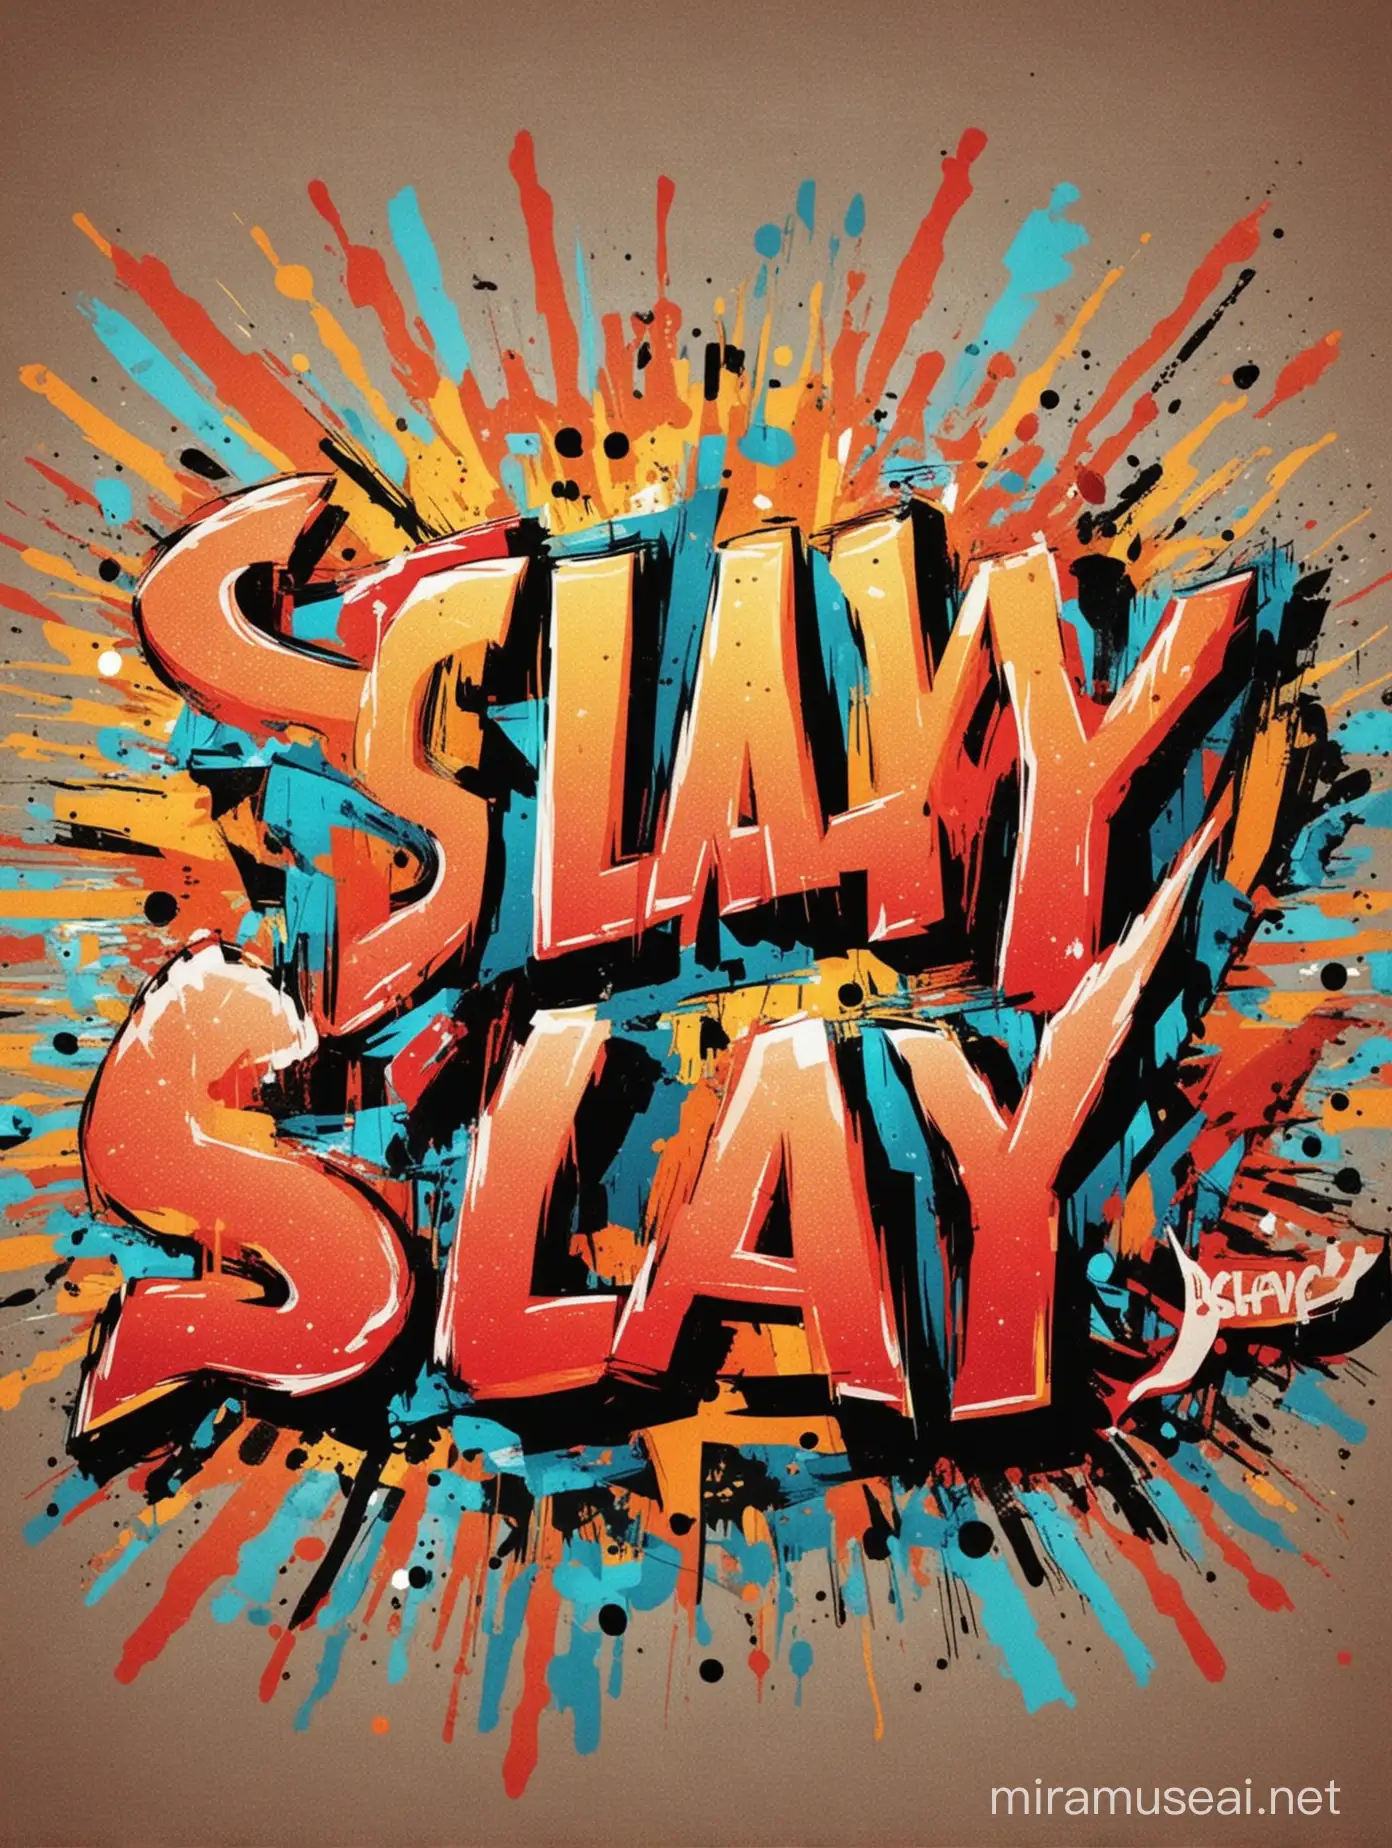 pop art artstyle of text "Slay"
